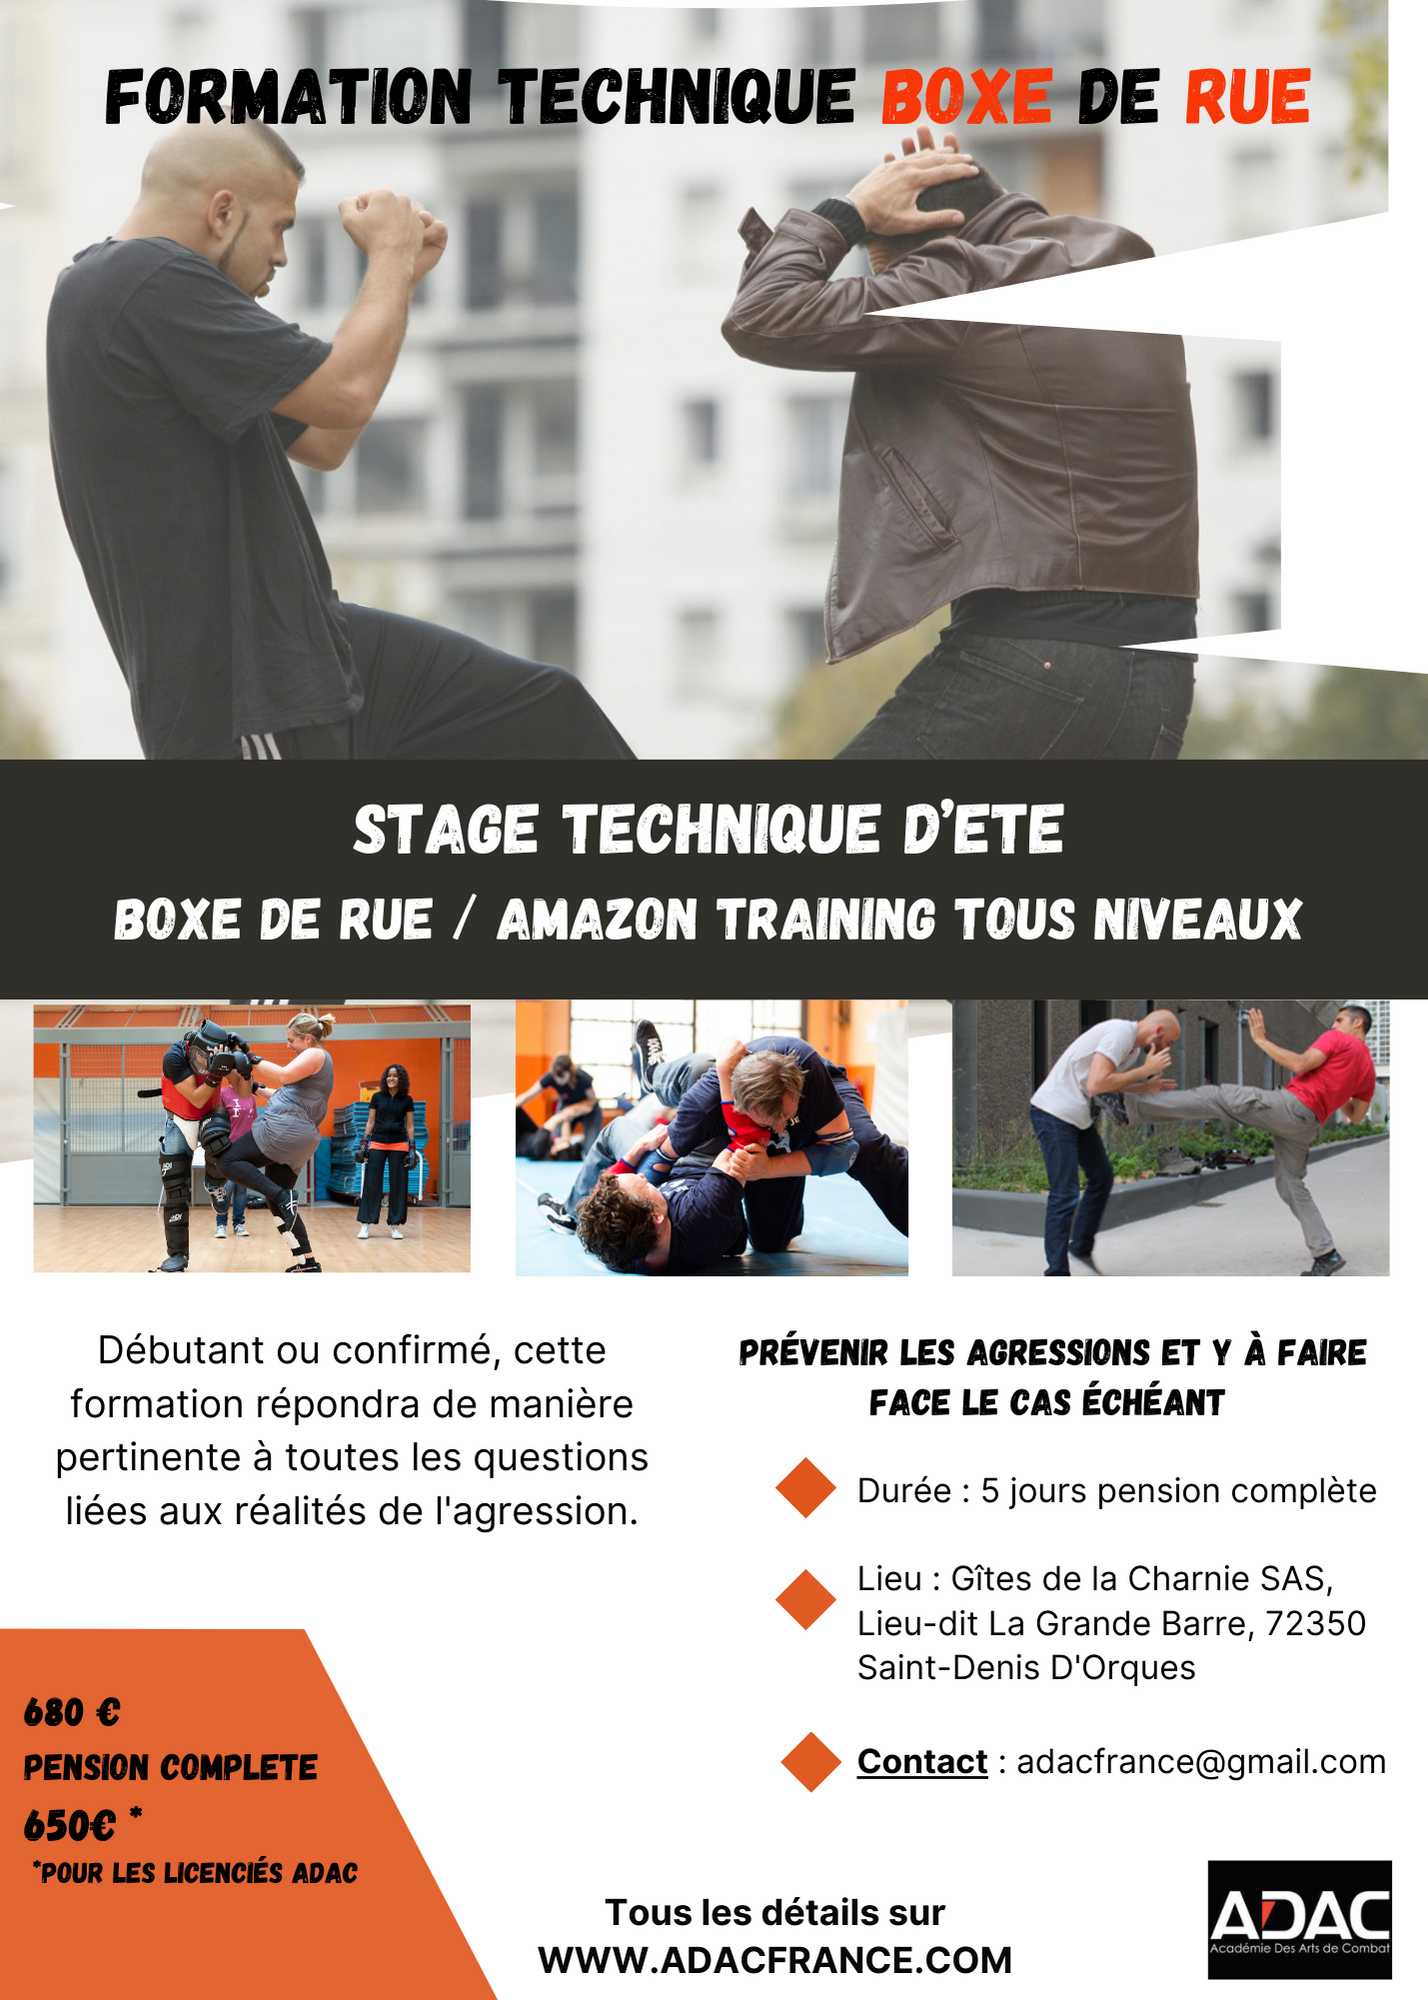 Stage technique d’été Boxe de rue / Amazon Training  – Tous niveaux!